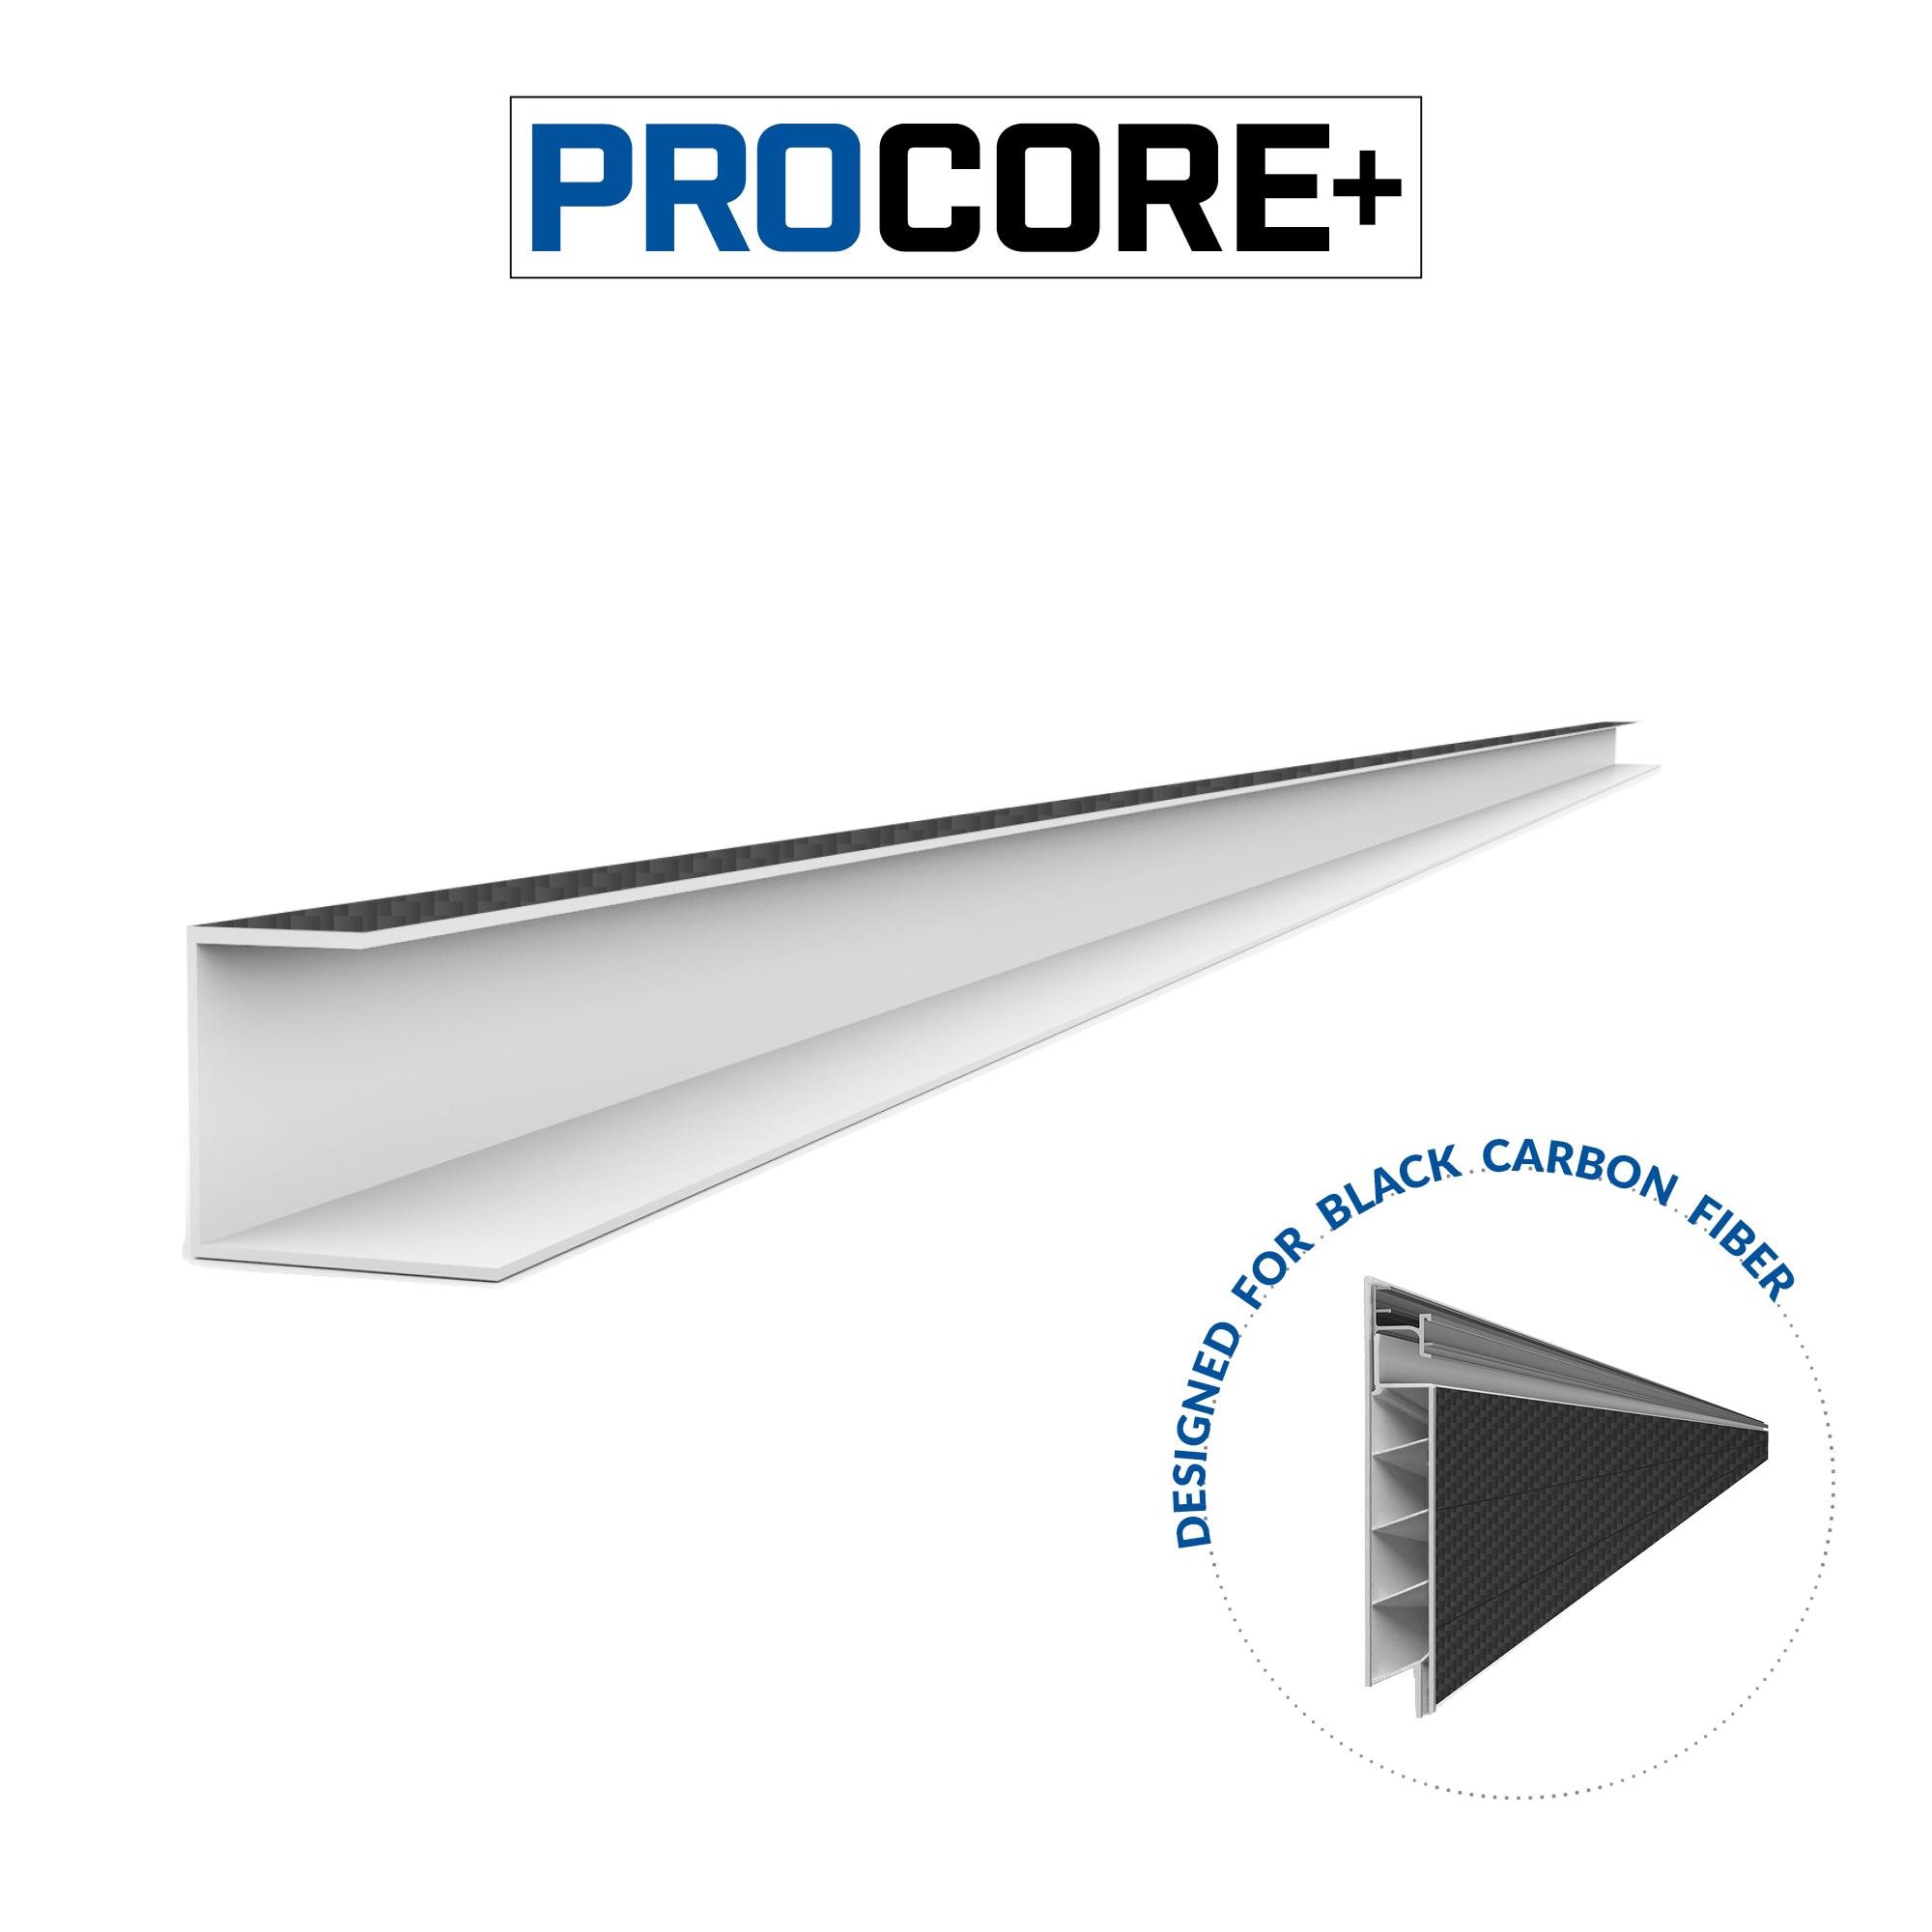 4 ft. PROCORE+ Black carbon fiber PVC Side Trim